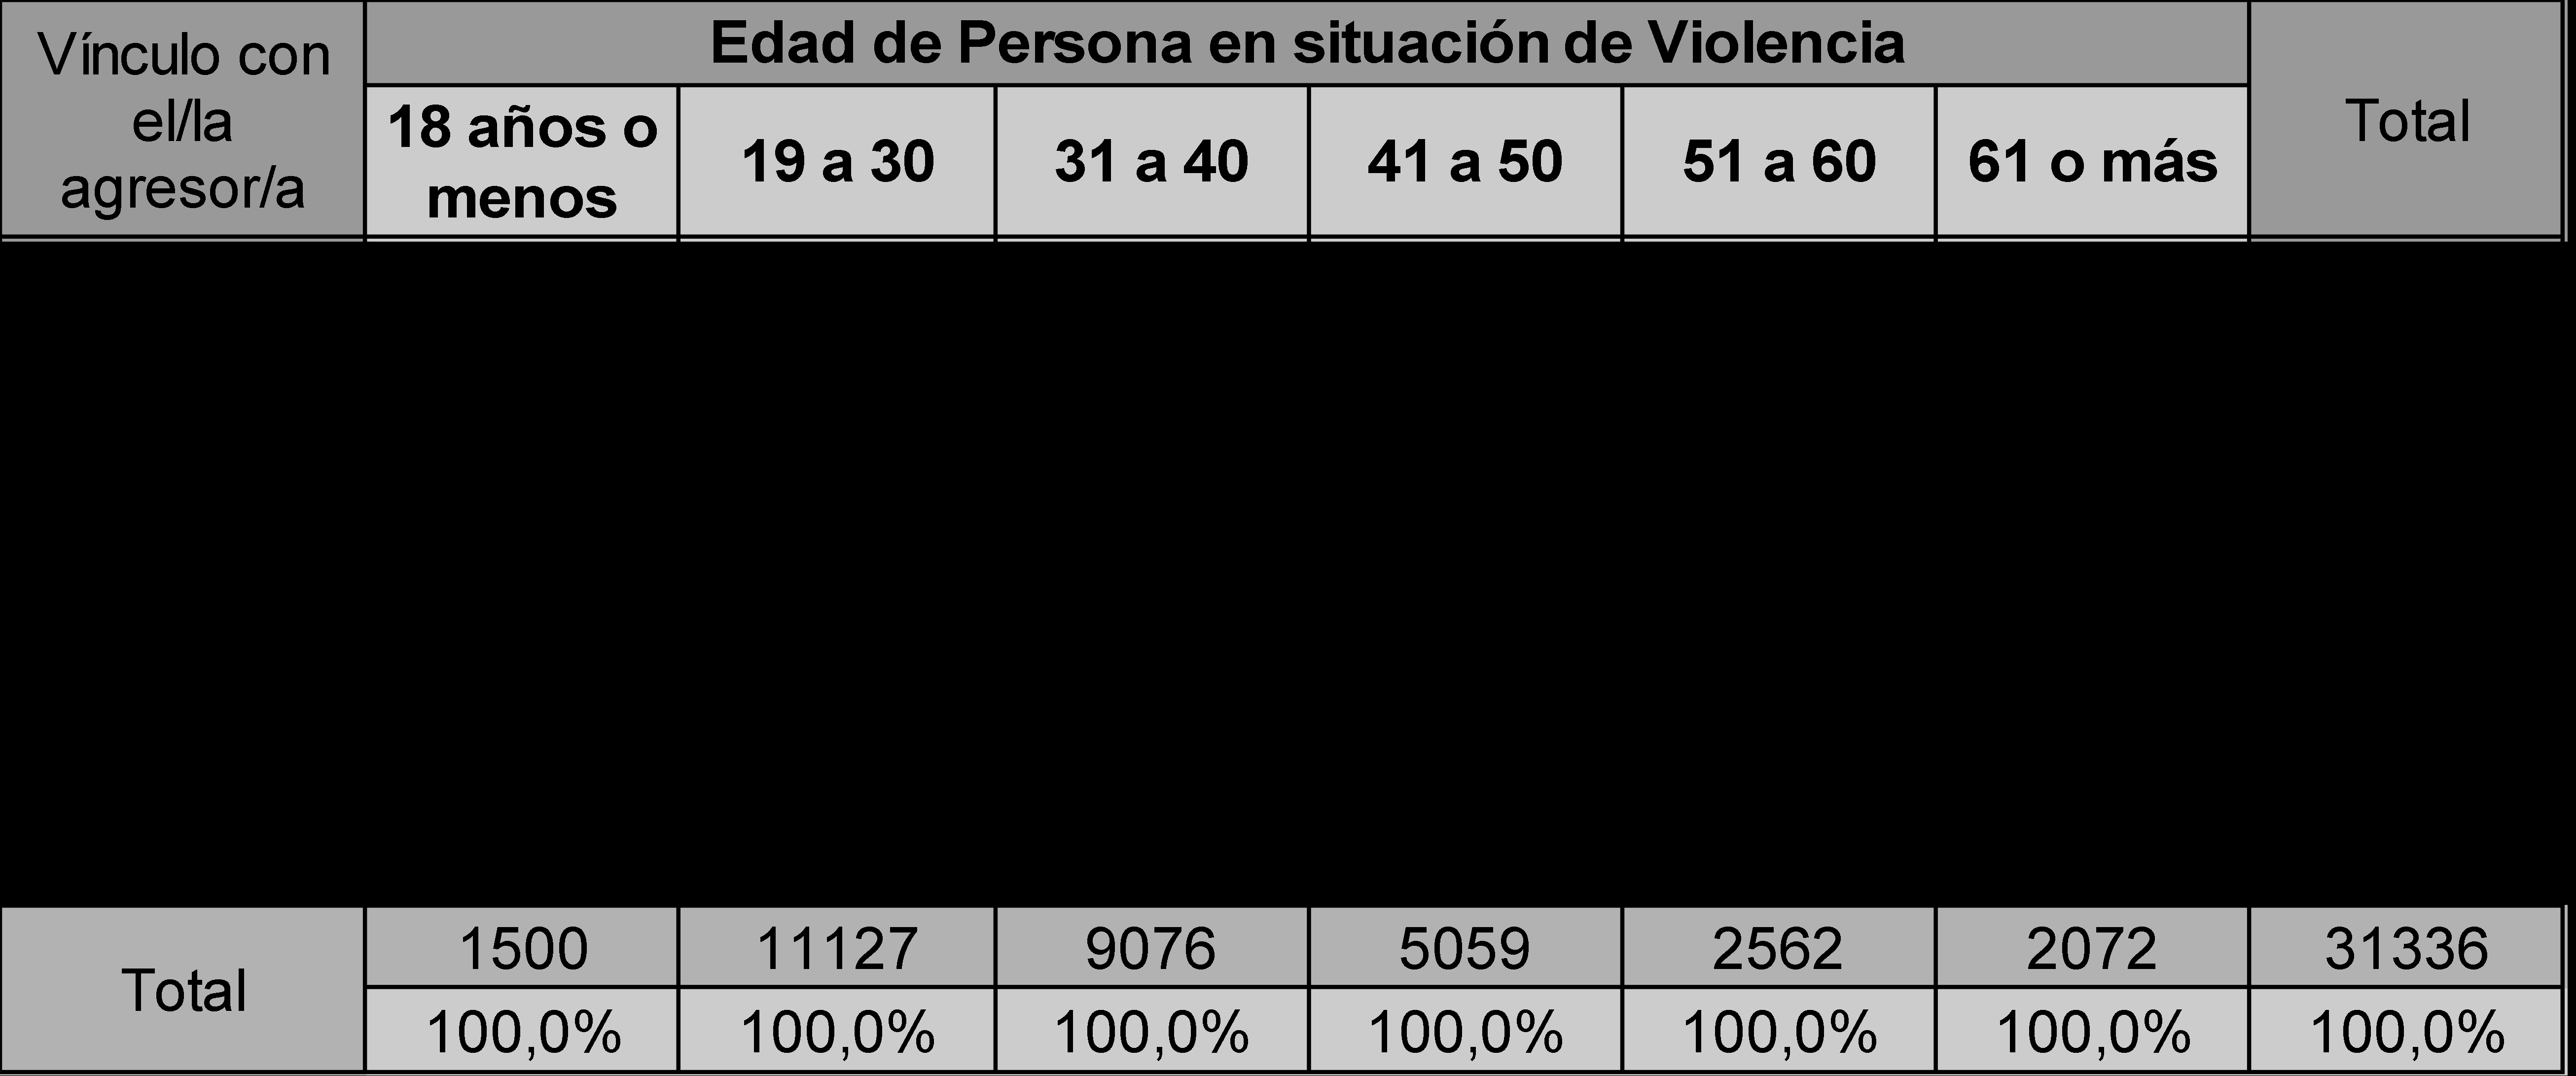 Tabla 10: Vínculo con el/la agresor/a según edad de la persona en situación de violencia1 Los datos de esta tabla permiten apreciar que del total de personas menores de 18 años, un 18,67% refiere a